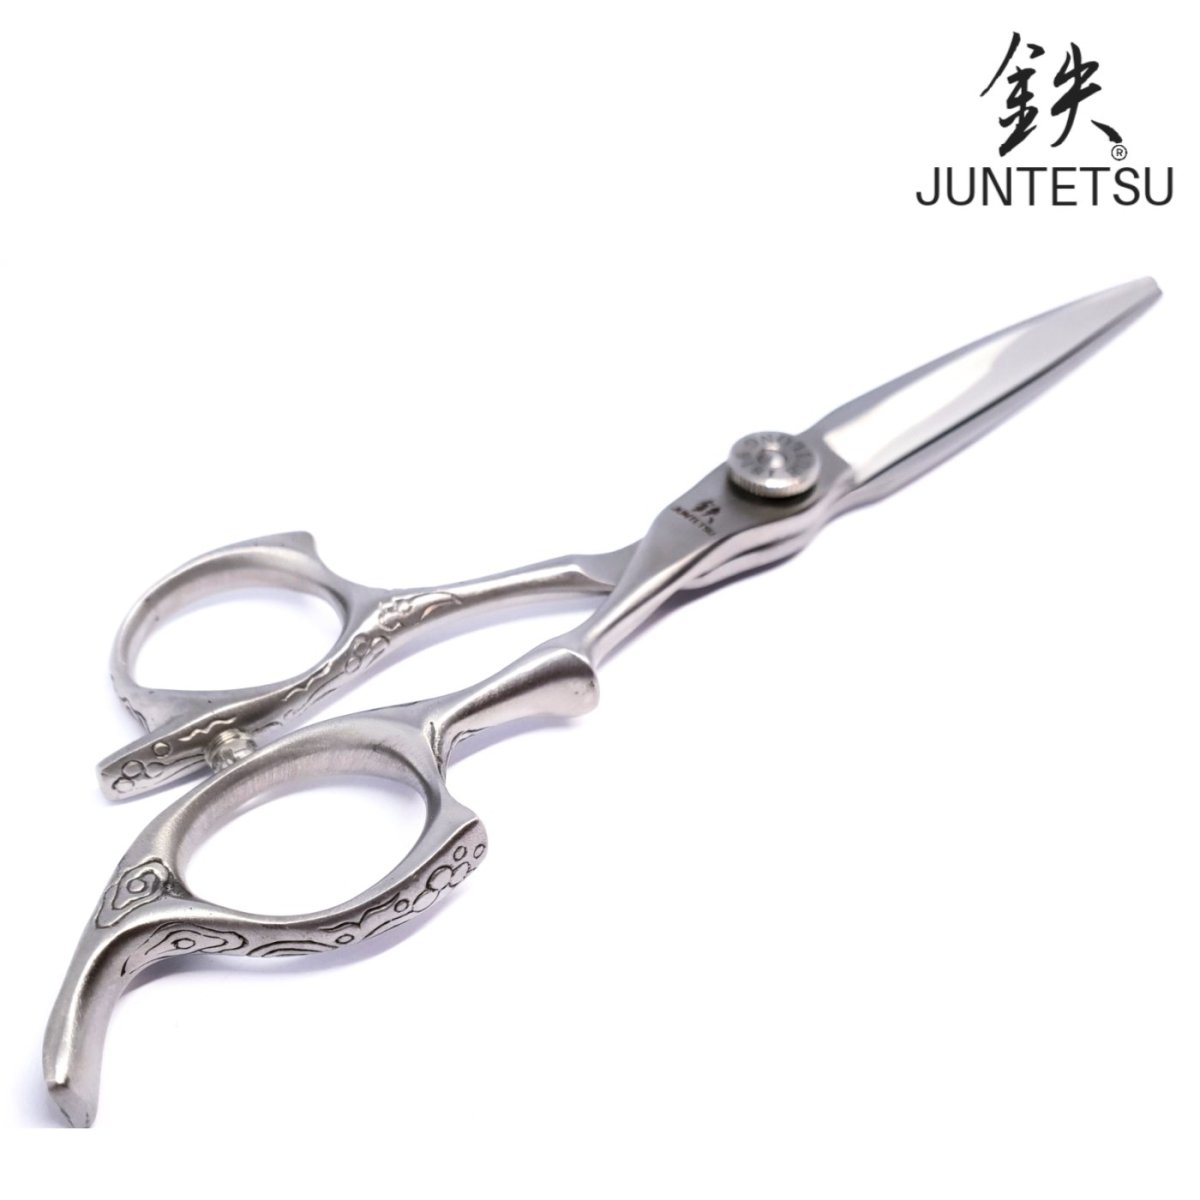 Juntetsu KS Hair Scissor